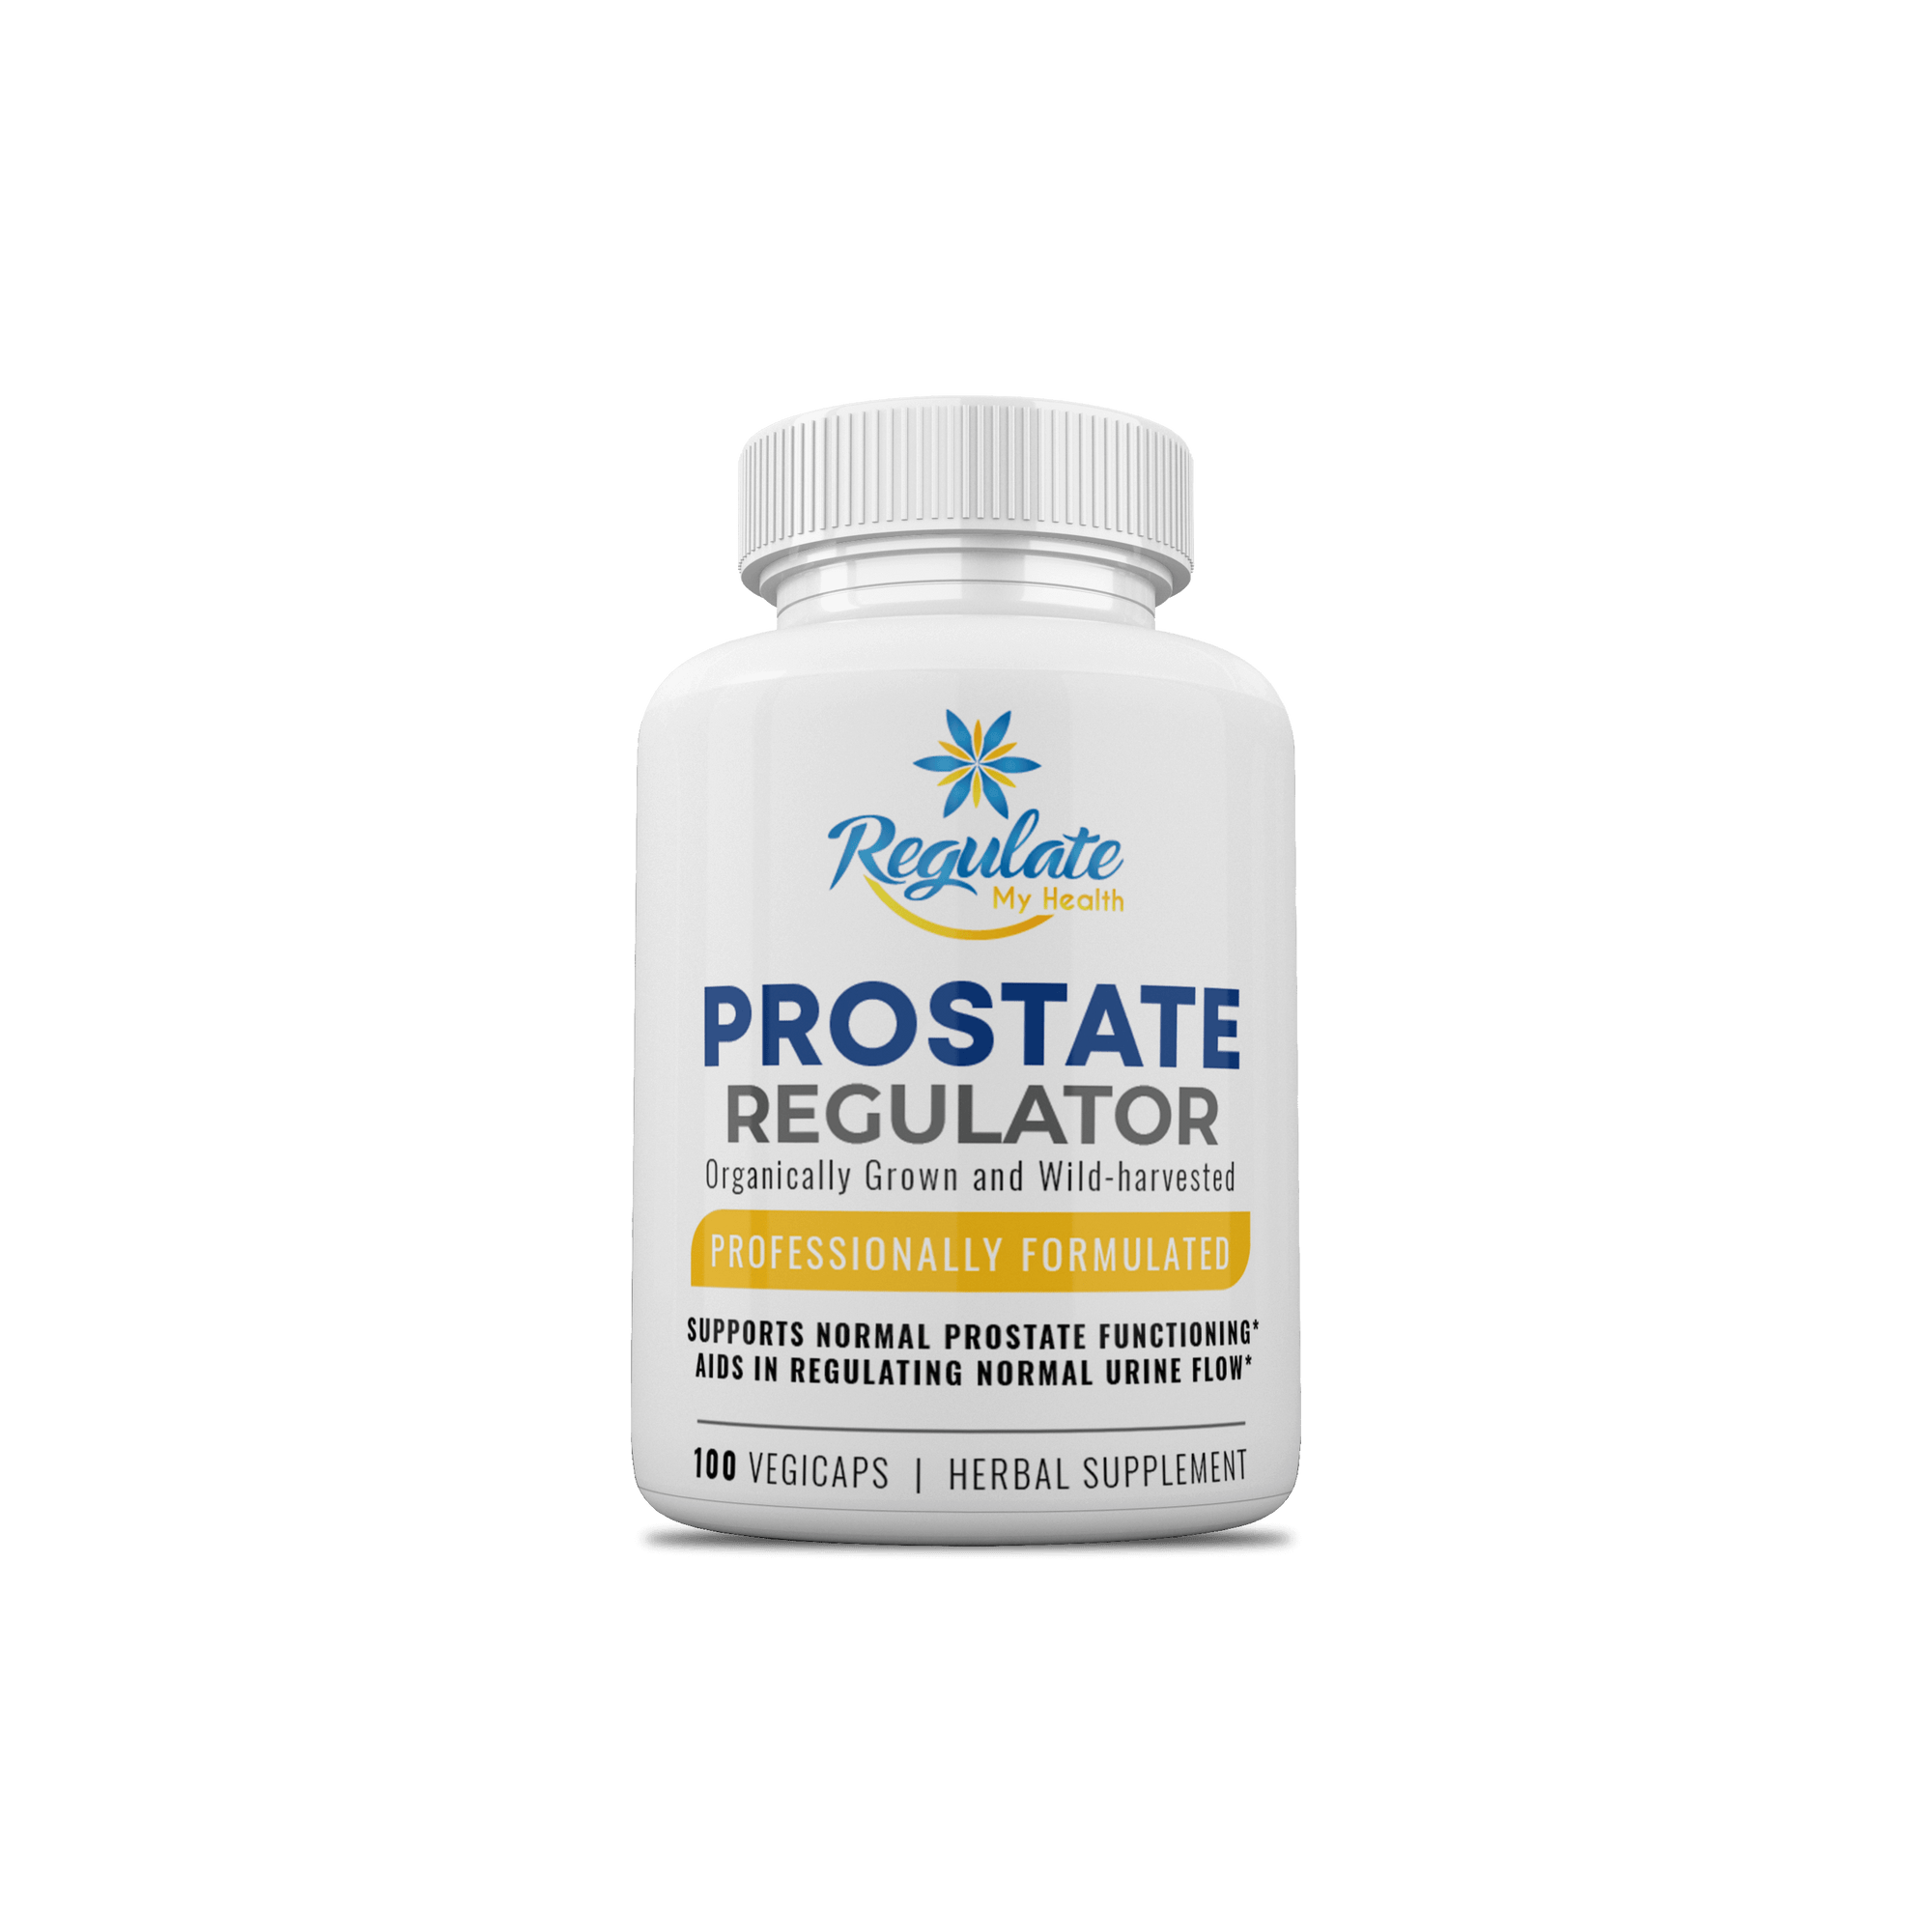 Prostate Regulator